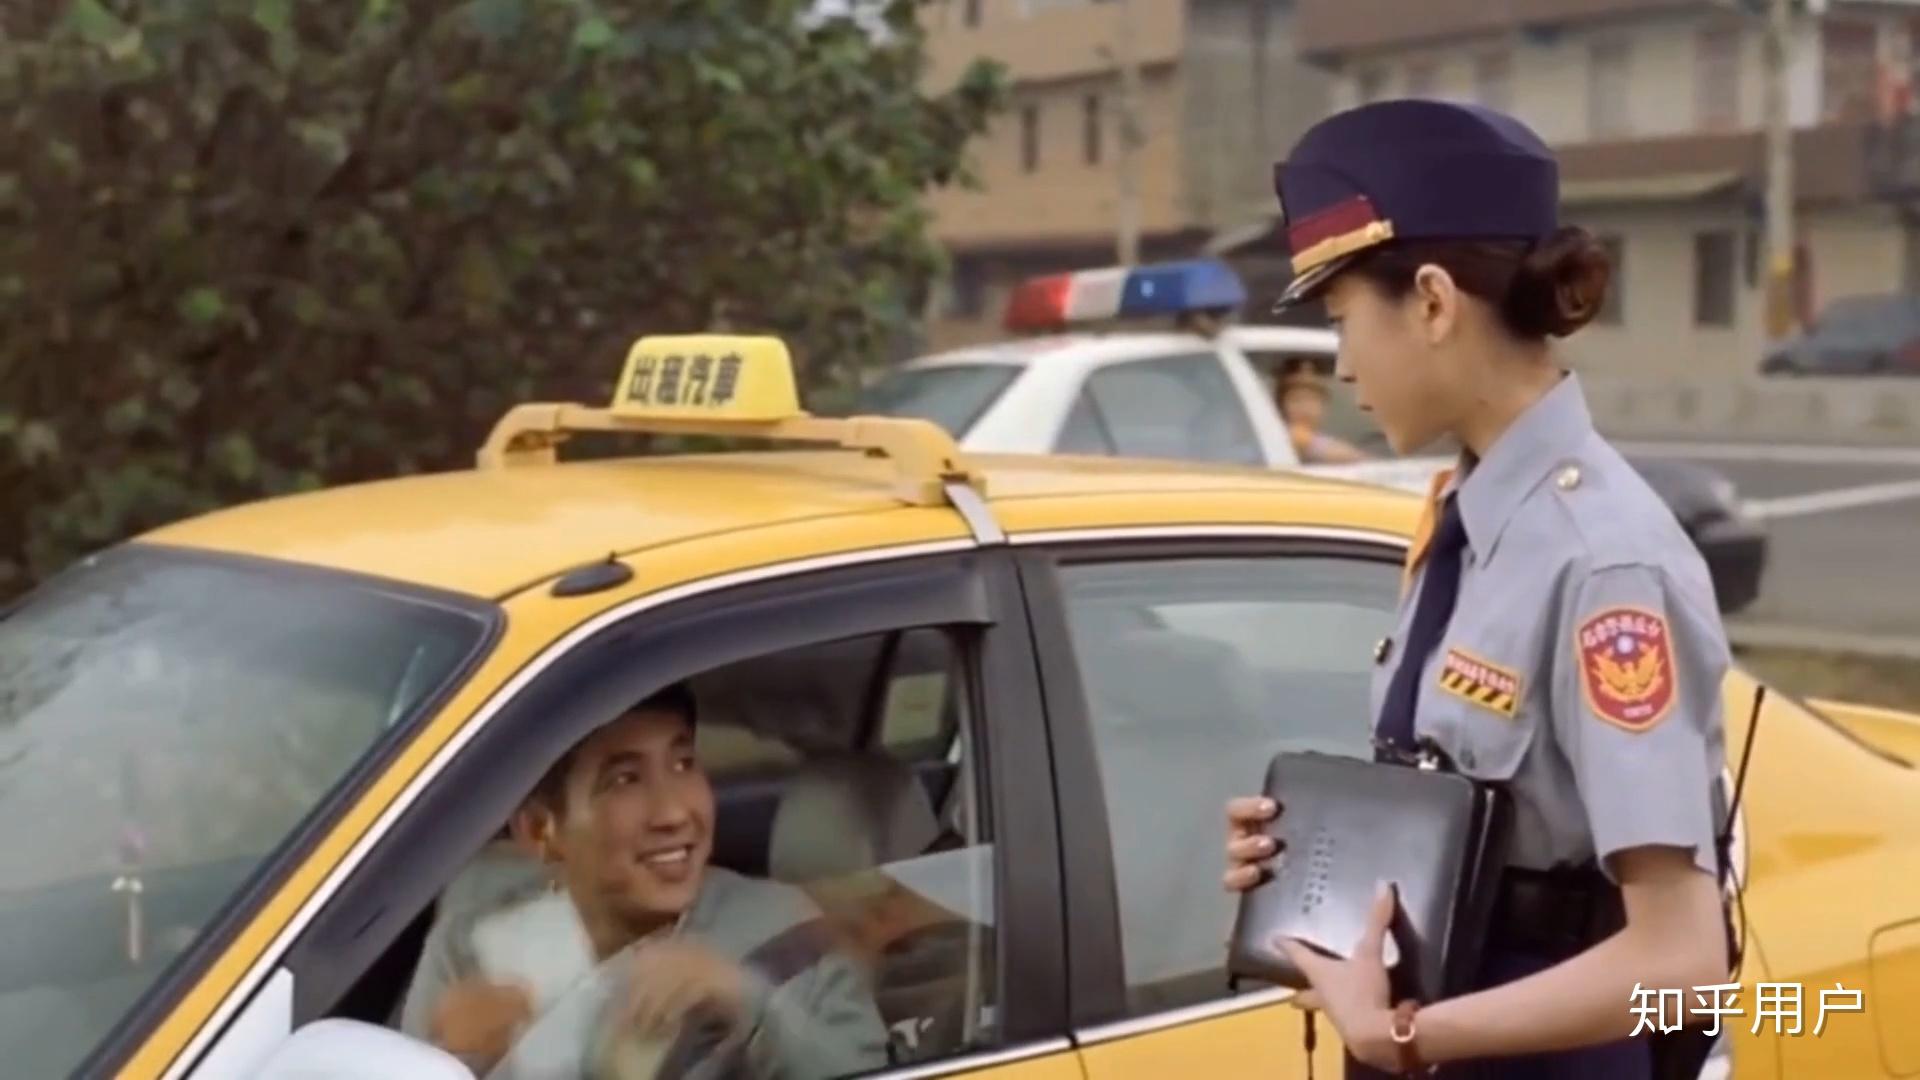 以前看过一部出租车司机为了泡女交警故意多次违章的电影现在想不起